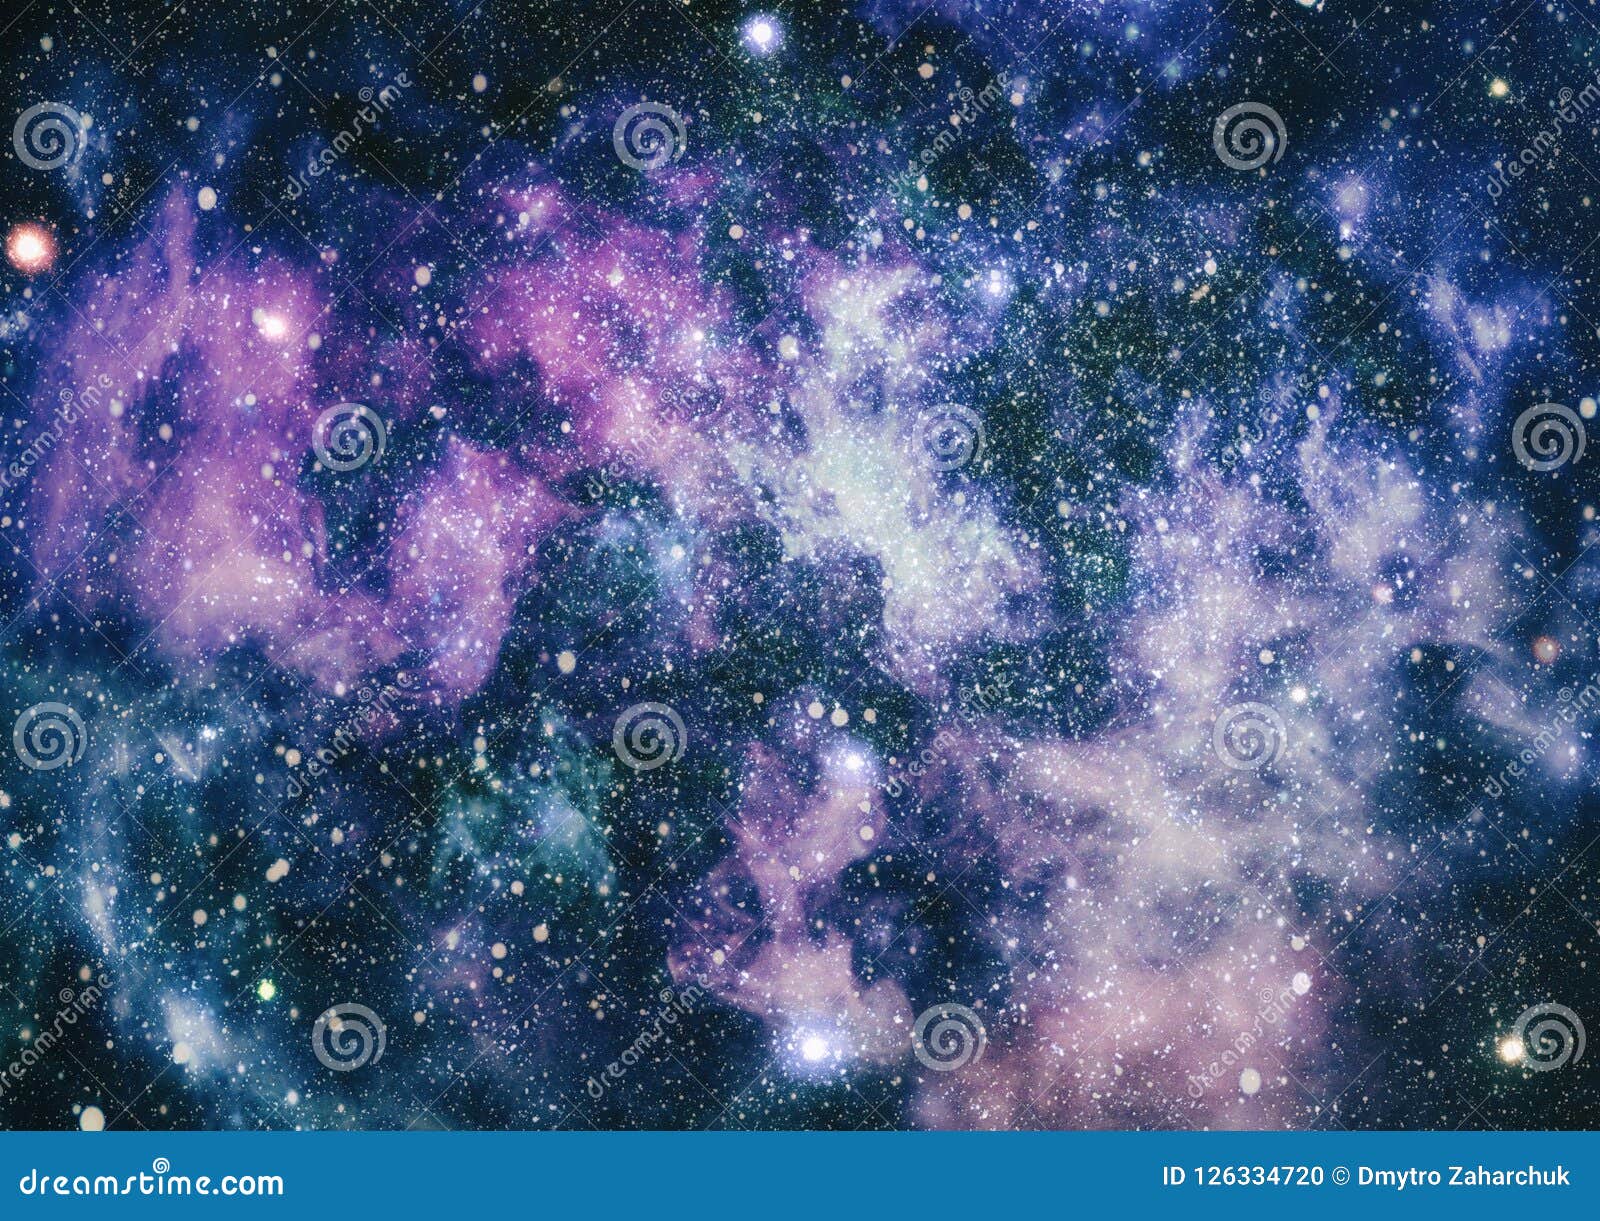 Vũ trụ đầy sao: Hãy bừng sáng và khám phá vũ trụ qua bức ảnh với hàng ngàn sao trên đêm trở nên rực rỡ. Sự kết hợp của màu đen và sáng trên bức ảnh giúp bạn có những trải nghiệm khó quên về vũ trụ.